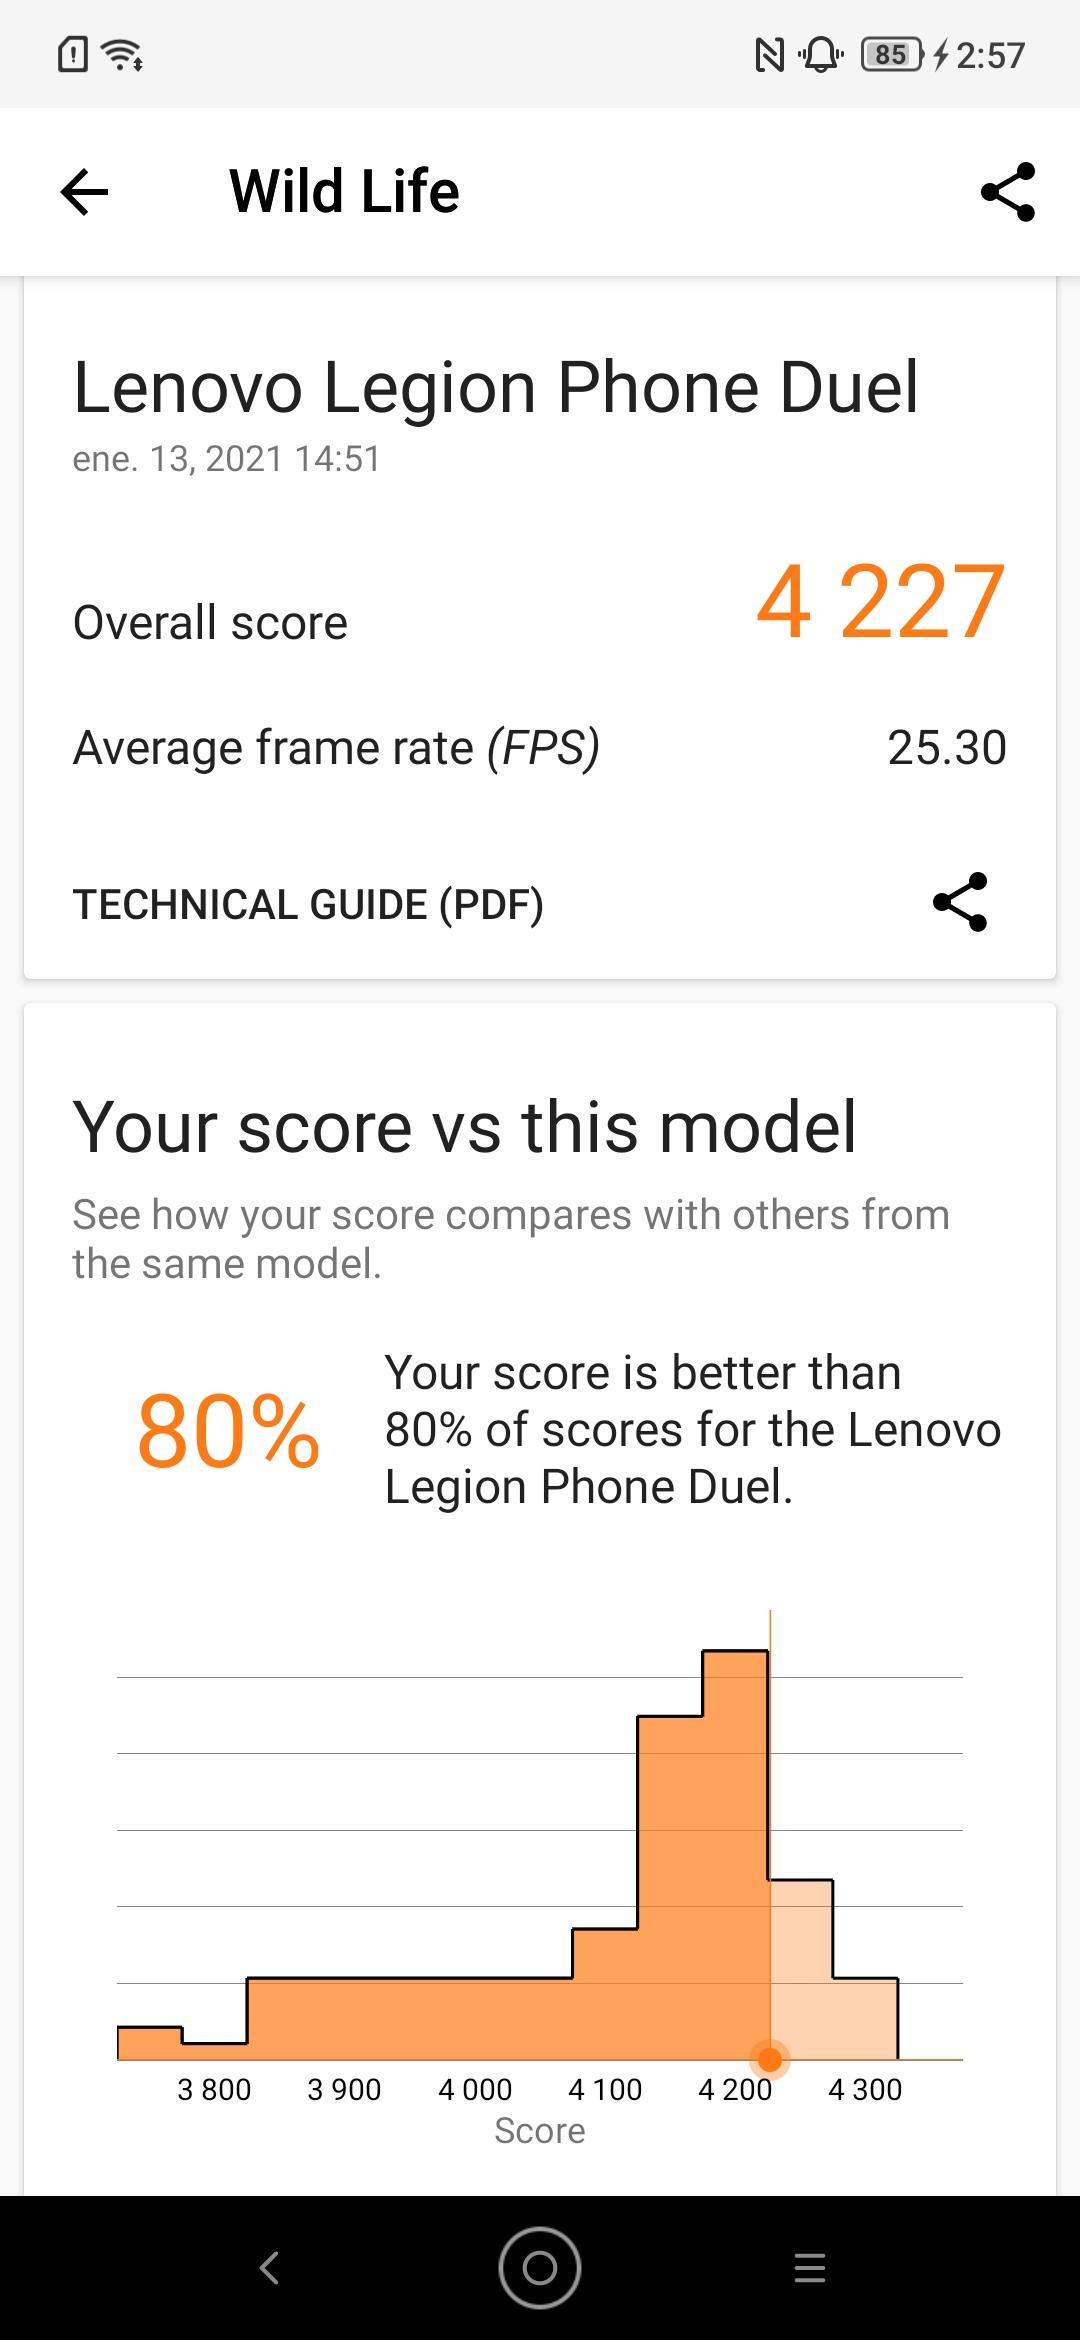 tulos Lenovo Legionista ja 3D-merkistä